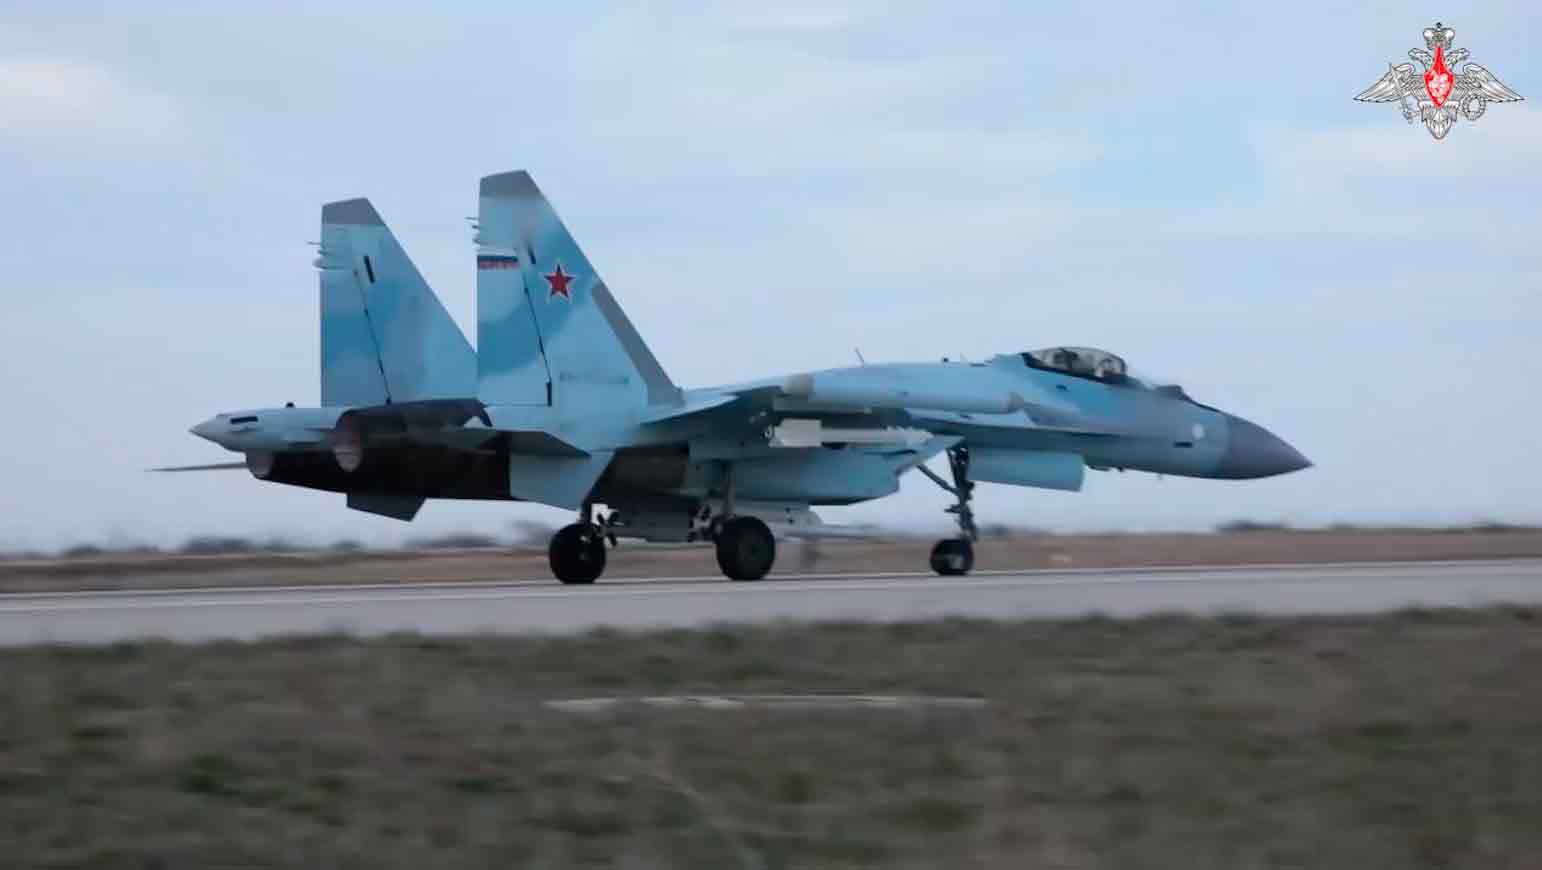 Wideo opublikowane przez Rosję pokazuje myśliwiec Su-35 niszczący ukraiński samolot